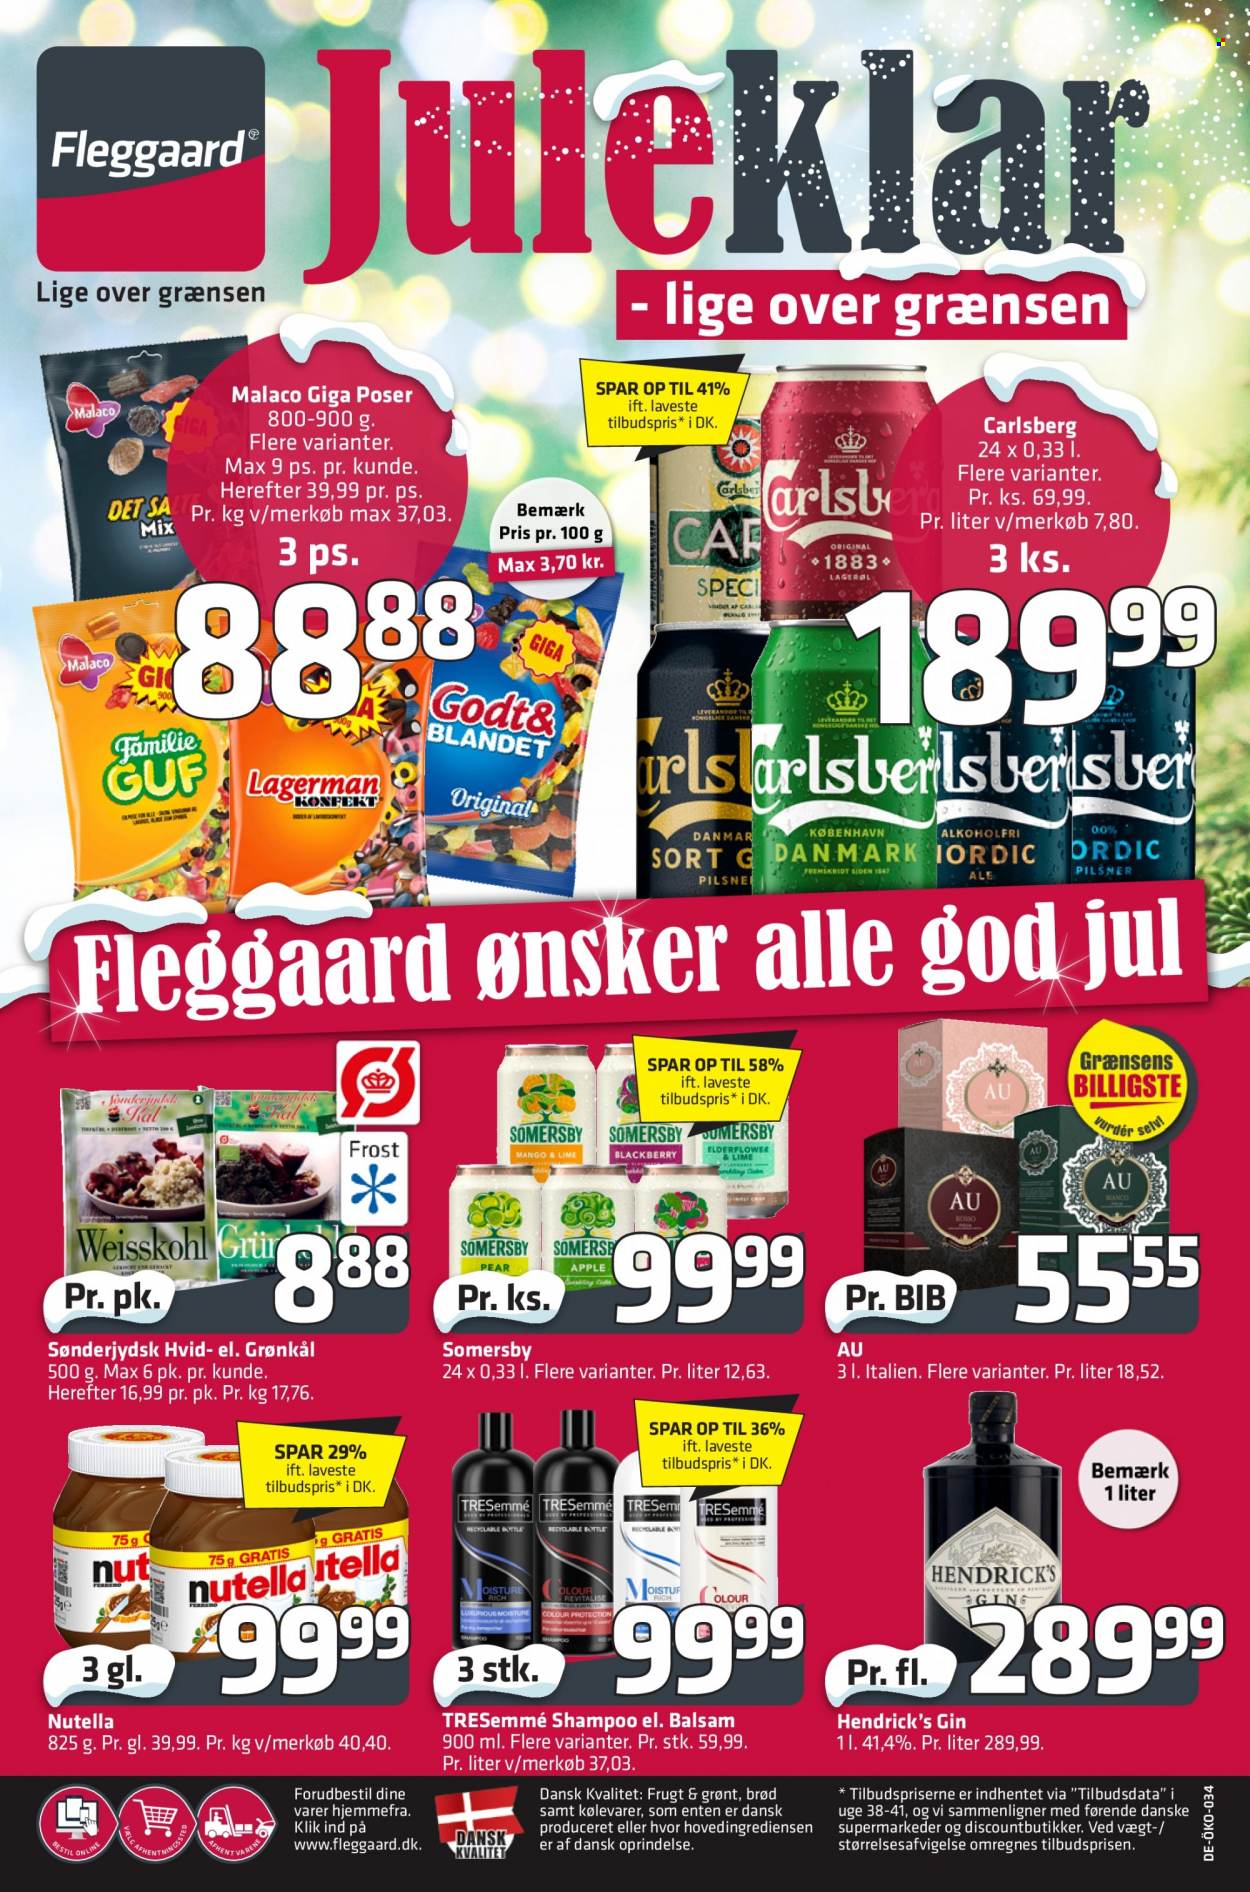 thumbnail - Fleggaard tilbud  - 30.11.2022 - 13.12.2022 - tilbudsprodukter - grønkål, Carlsberg, øl, brød, Malaco, Nutella, gin, shampoo, TRESemmé. Side 60.